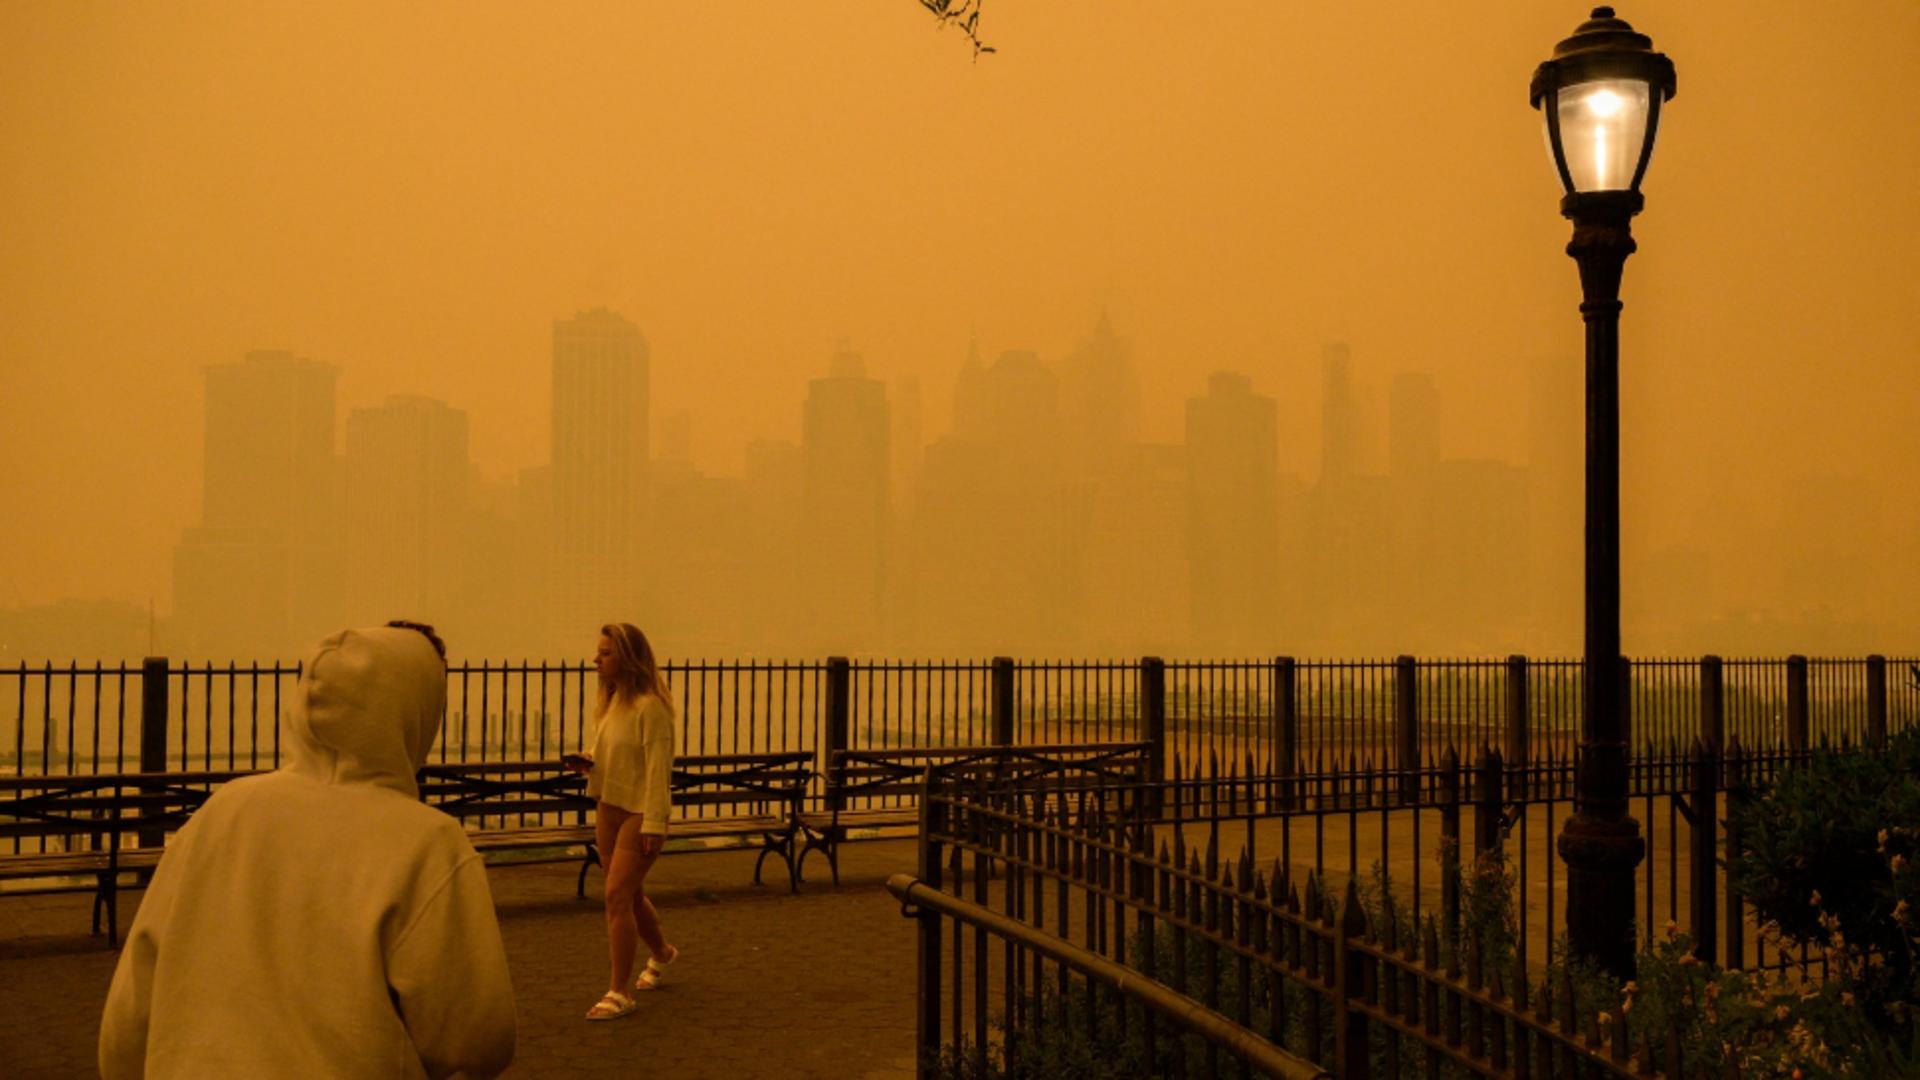 Orașul New York, paralizat de fumul dens de la incendiile din Canada. Foto/Profimedia